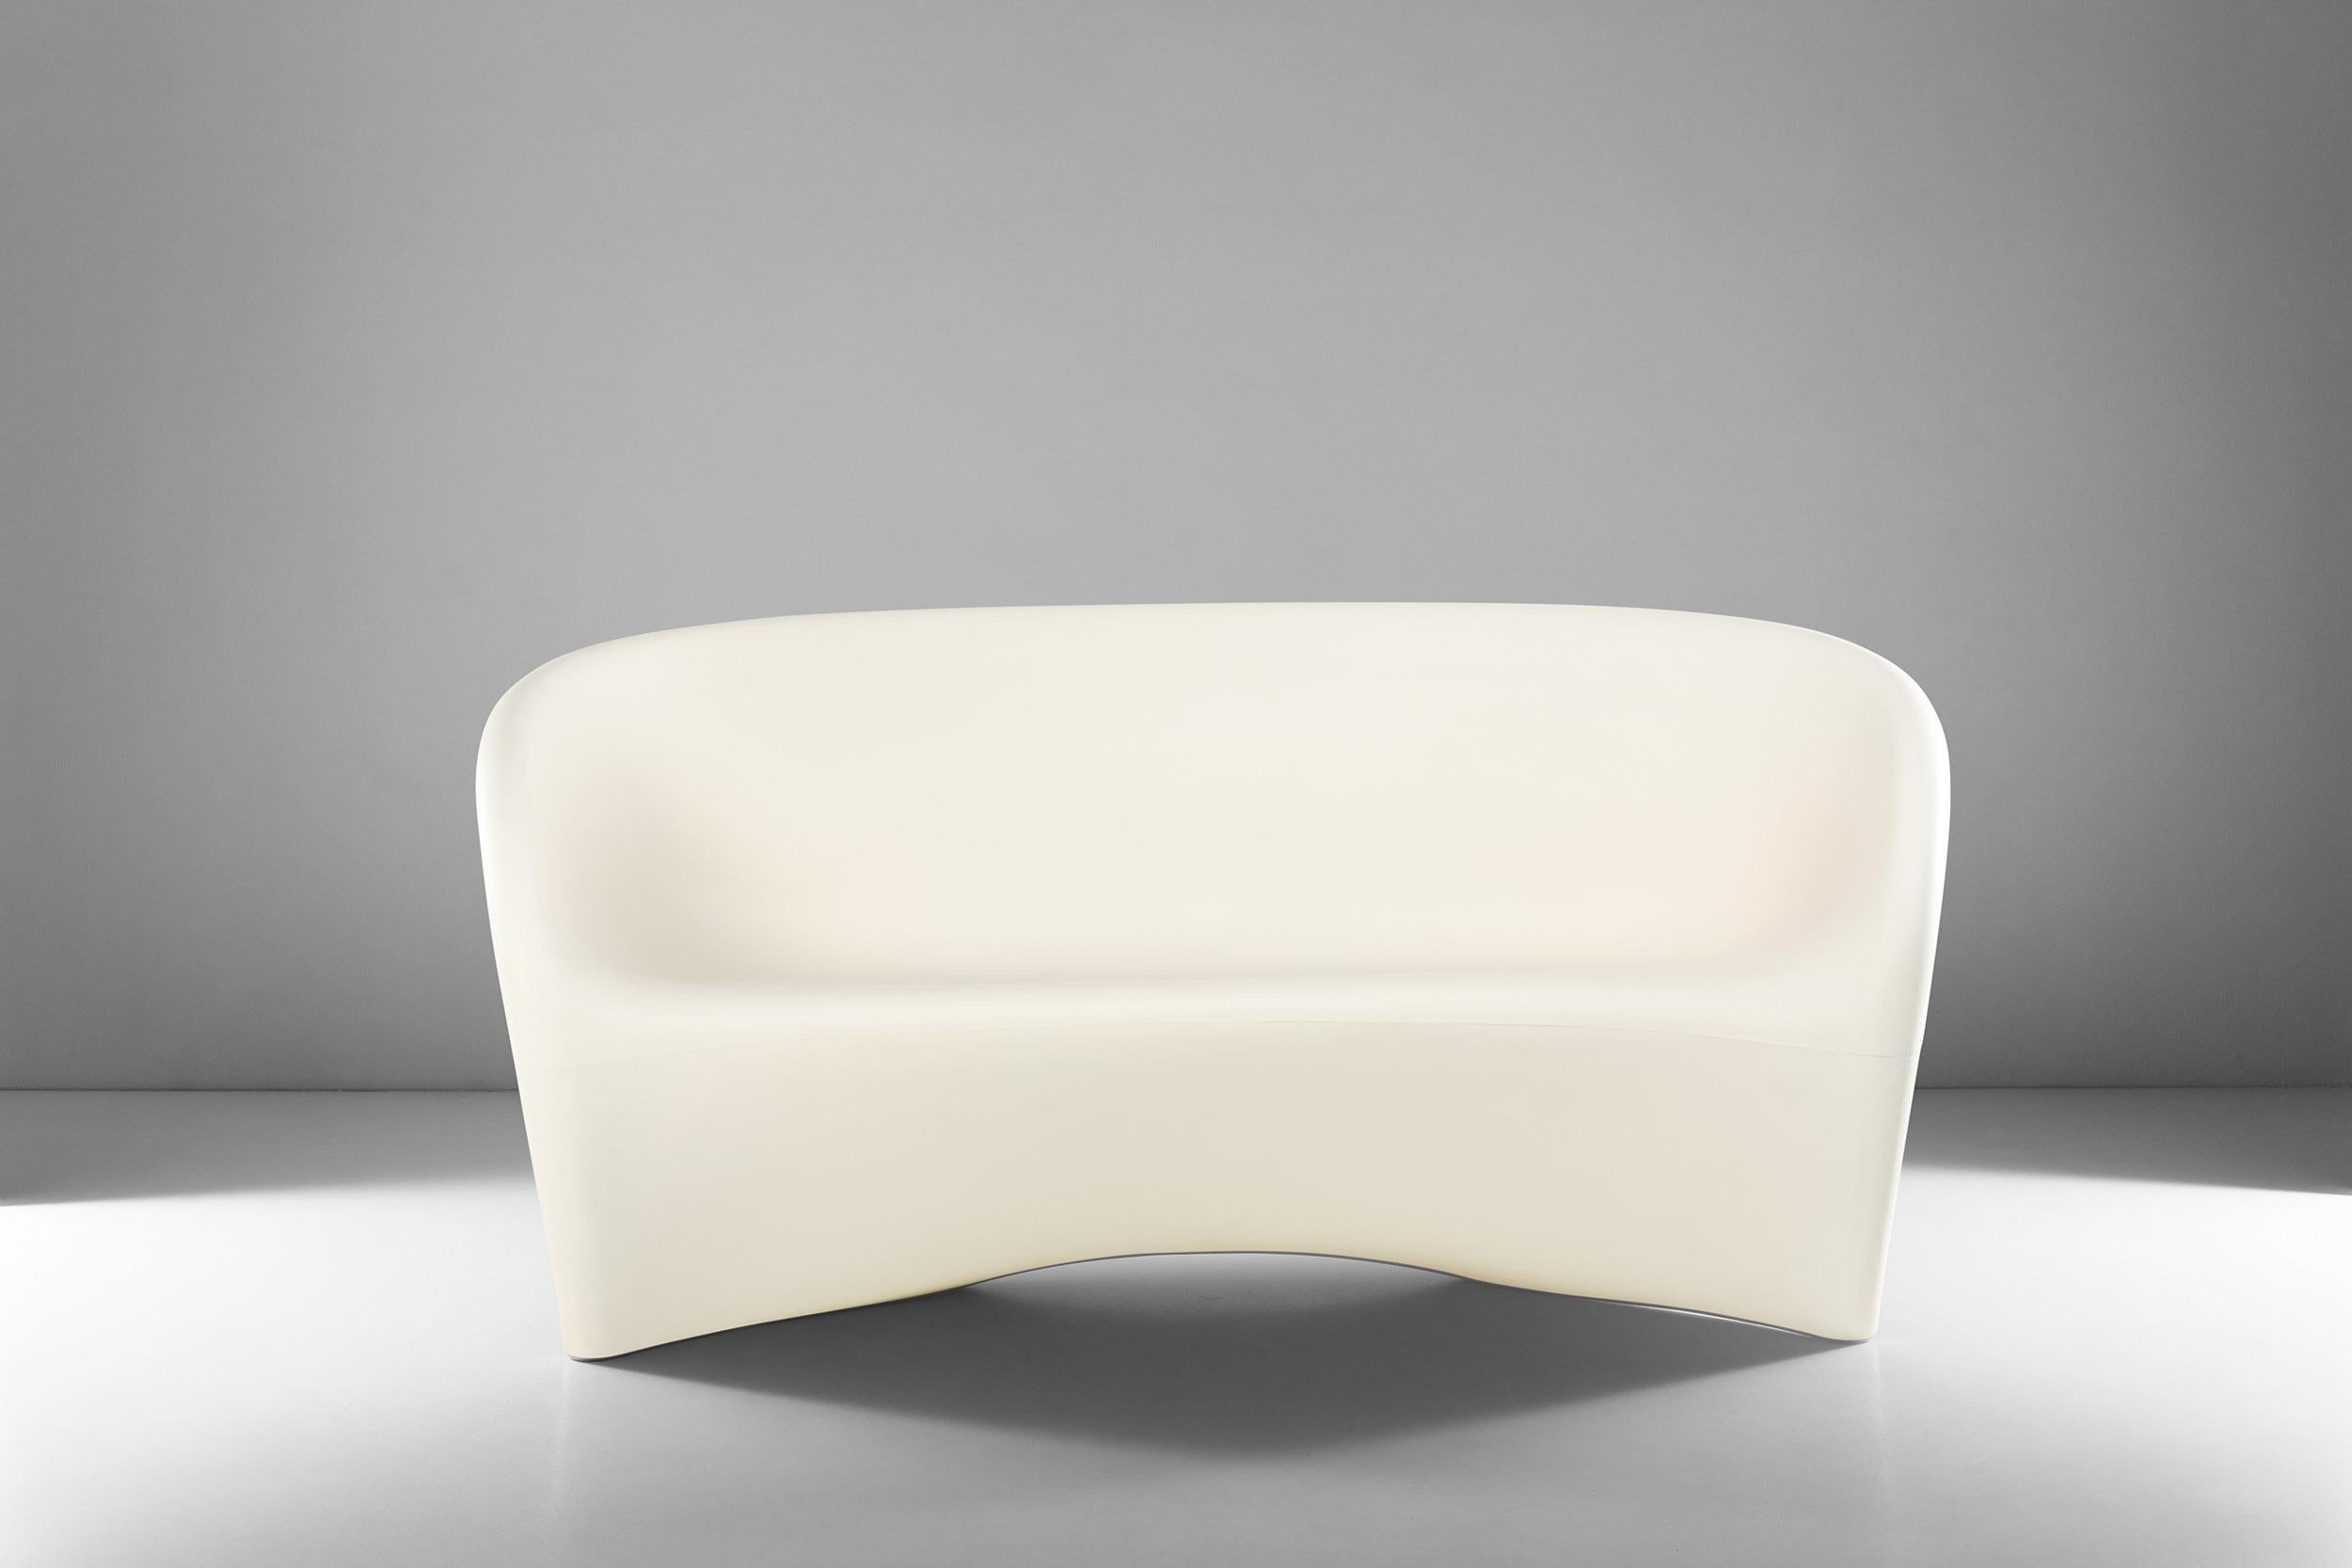 Innovation, expérimentation des matériaux et des formes. Ce canapé est un canapé monobloc sculptural iconique en polyéthylène, conçu par Ron Arad et fabriqué par Driade, blanc sable à l'extérieur et rouge à l'intérieur. Parfaite pour un usage